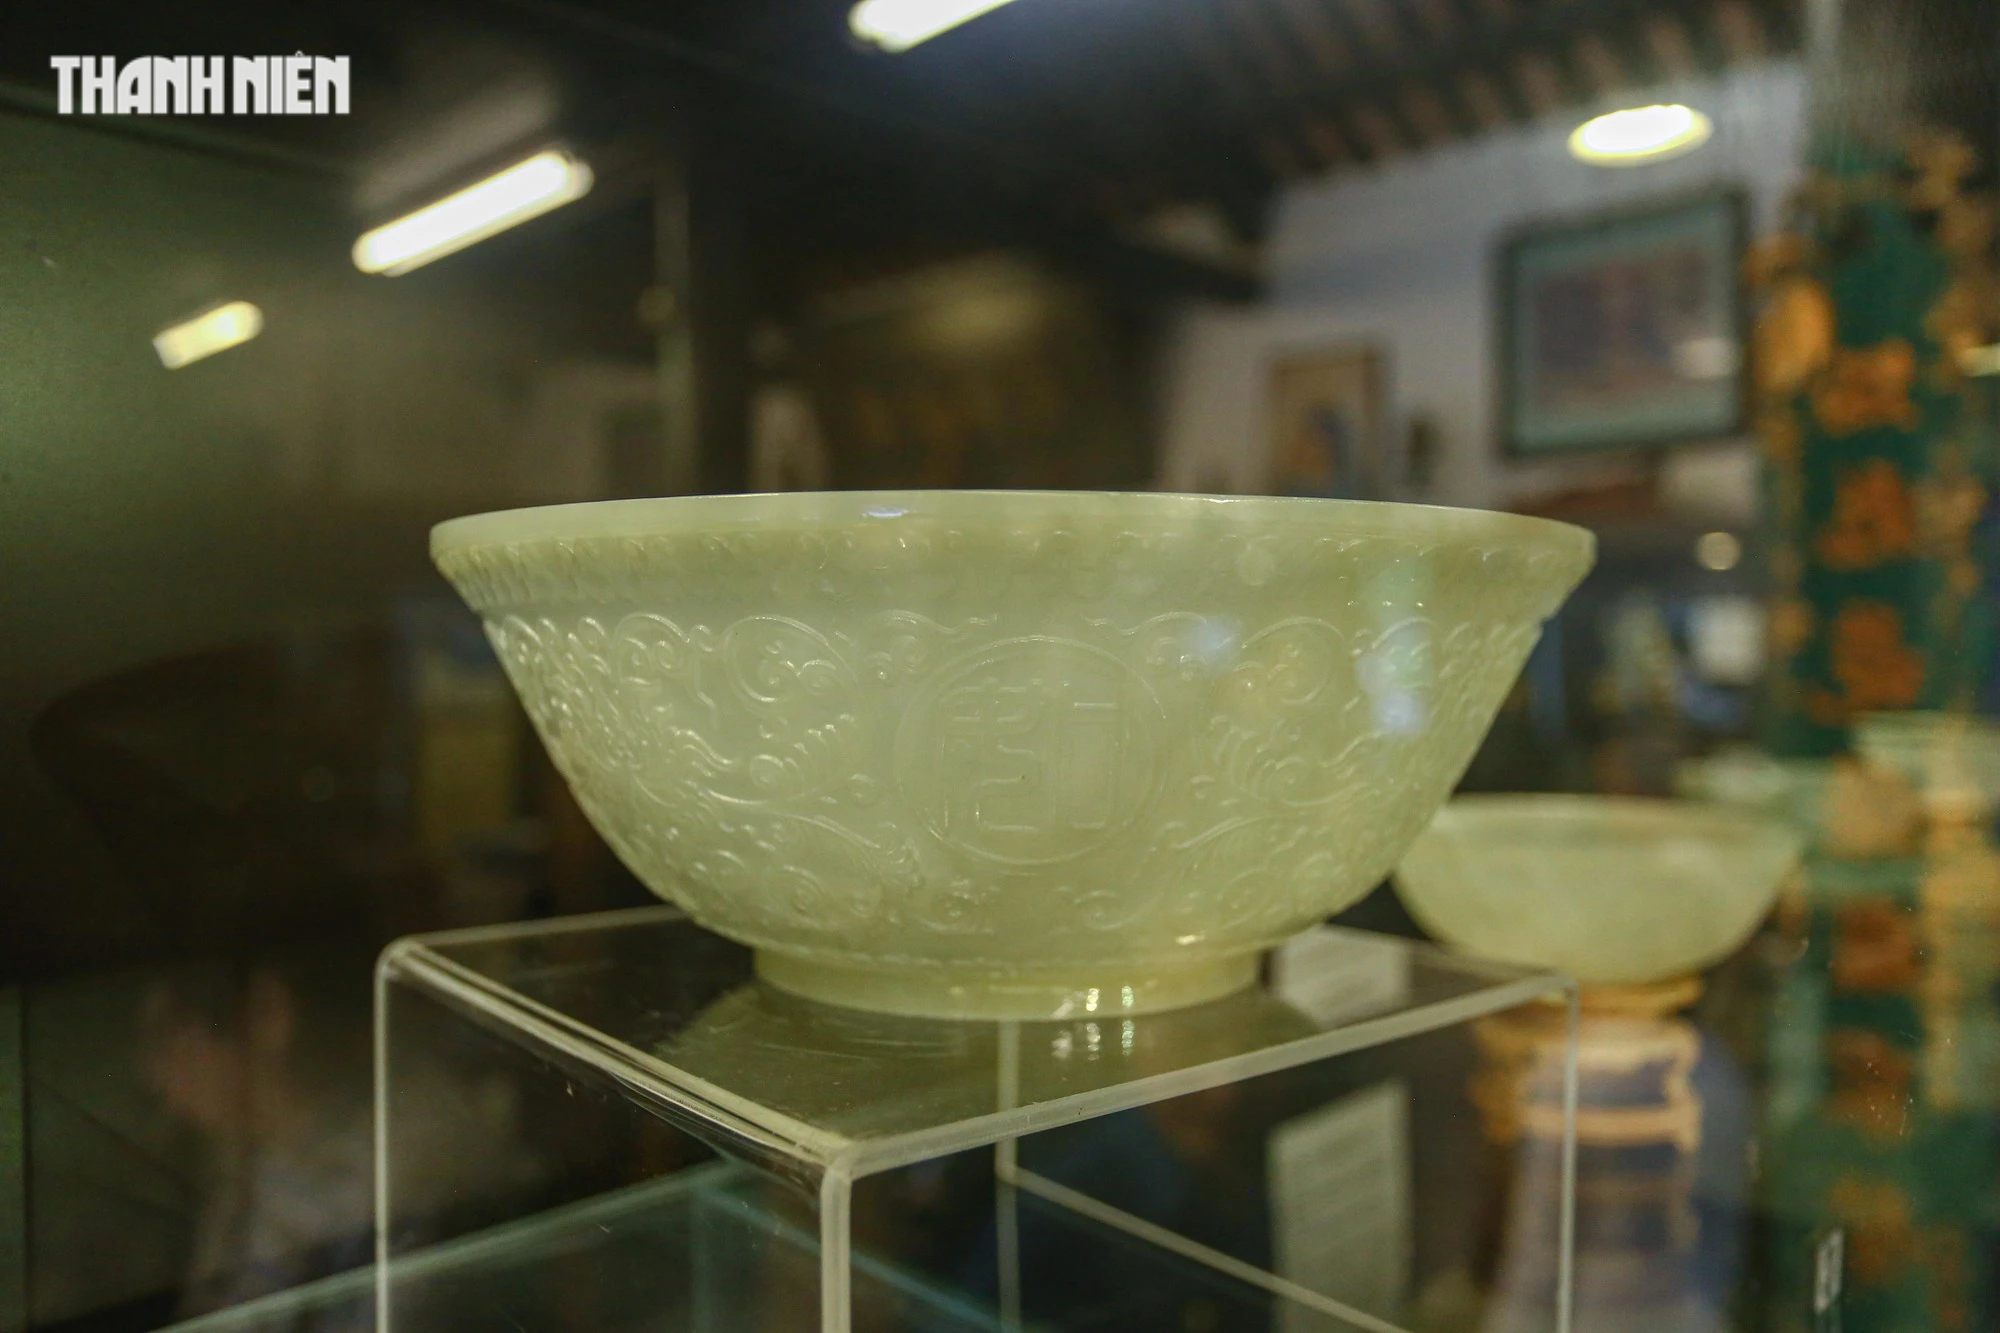 Chiêm ngưỡng hơn 70 món ngọc quý thời Nguyễn đang được trưng bày tại Huế - Ảnh 4.